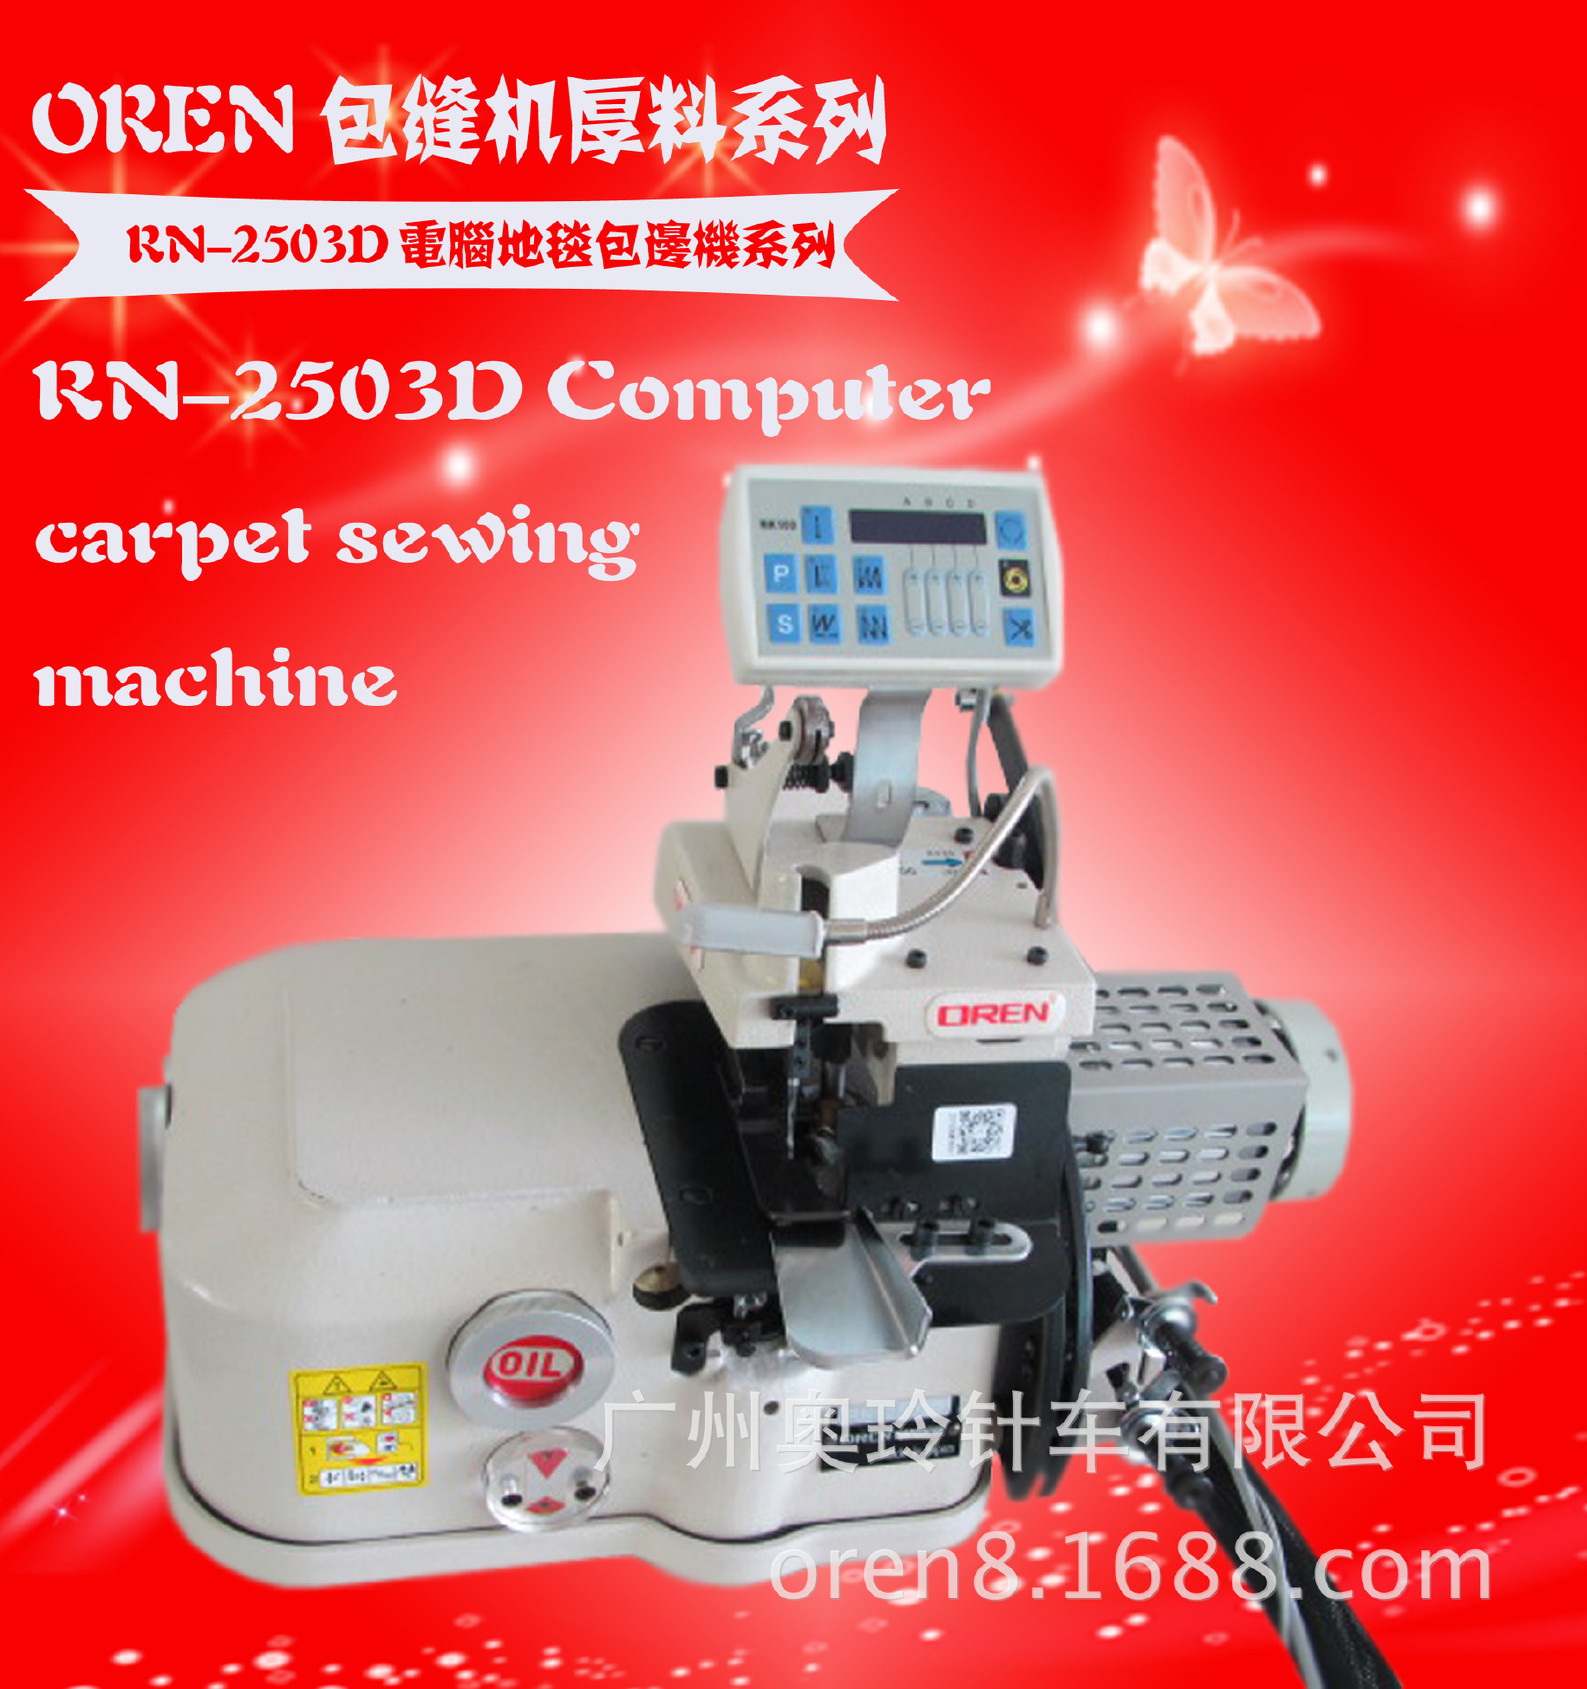 广州奥玲RN-2503D飞机地毯包缝机示例图3